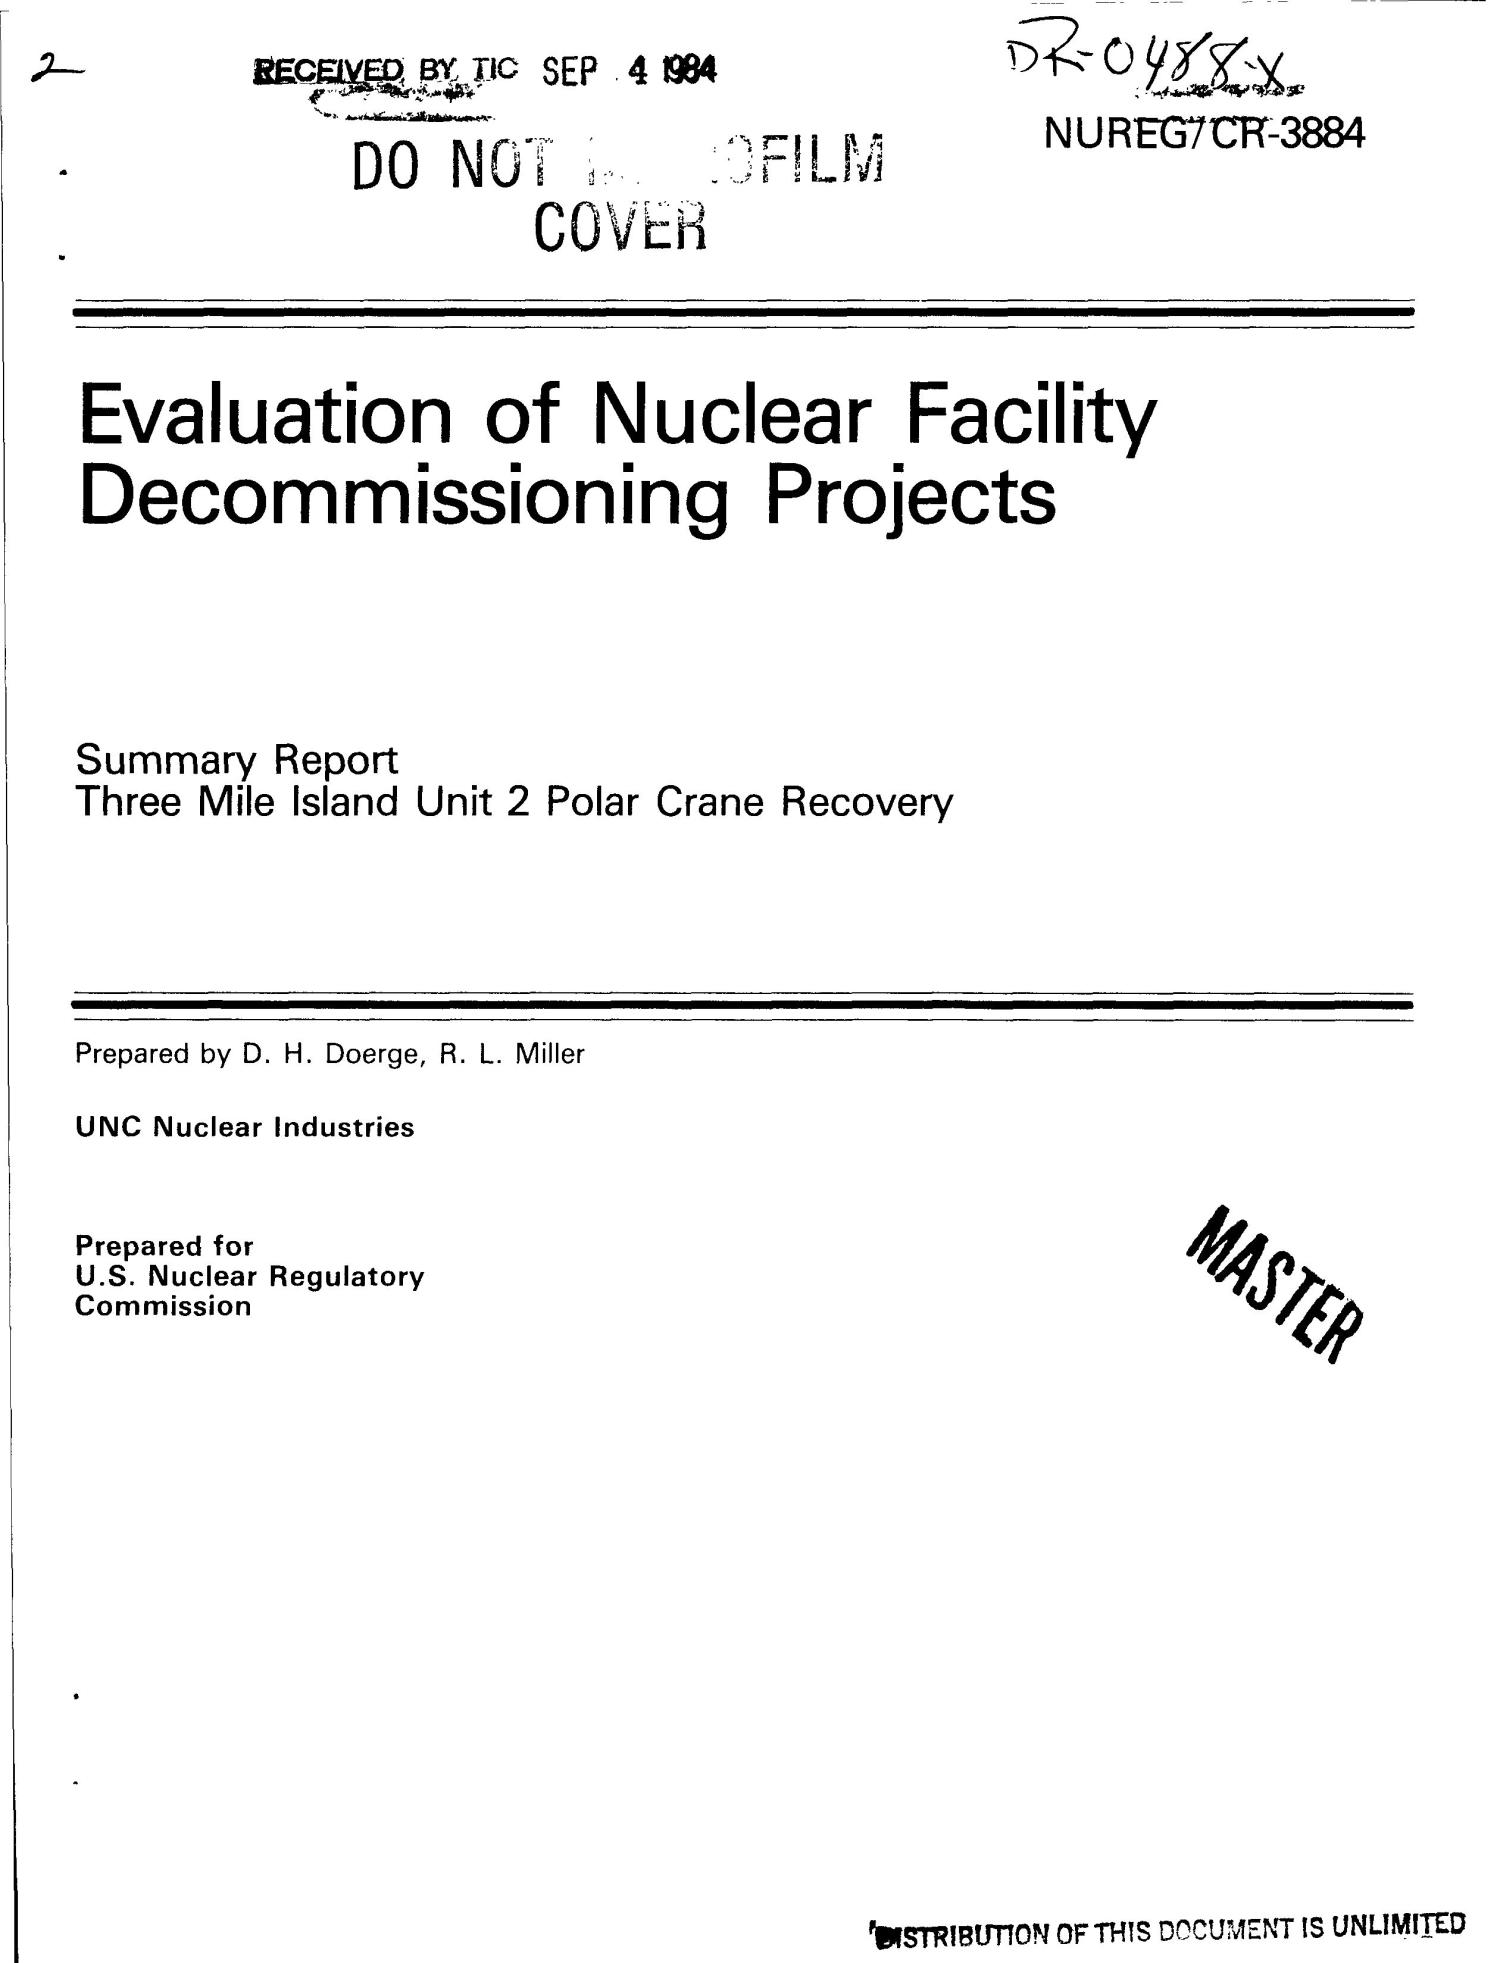 Three Mile Island Decommissioning